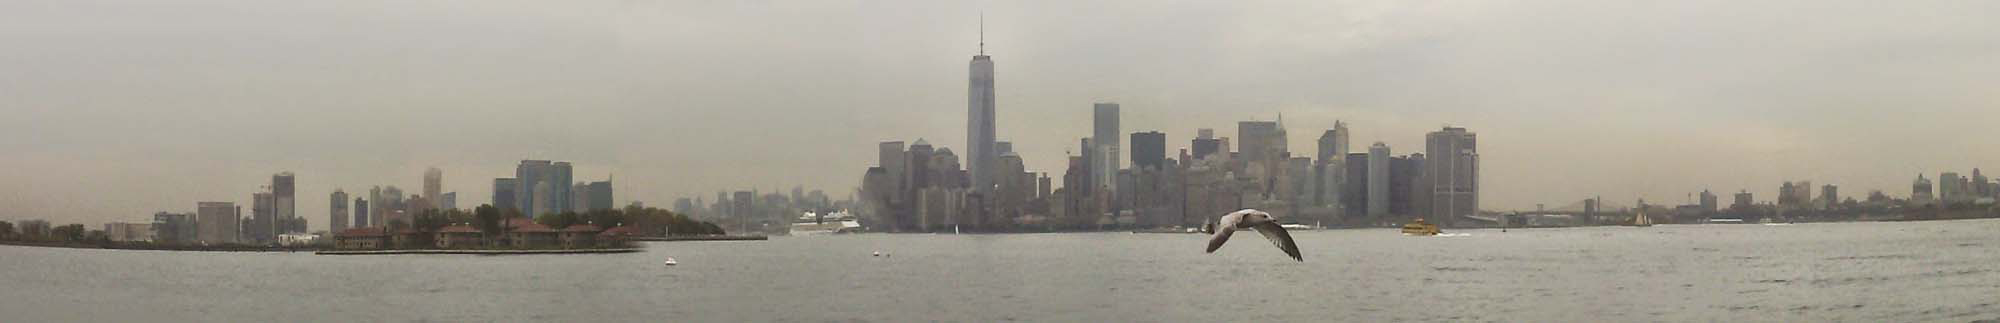 USA, New York, Manhattan, panorama